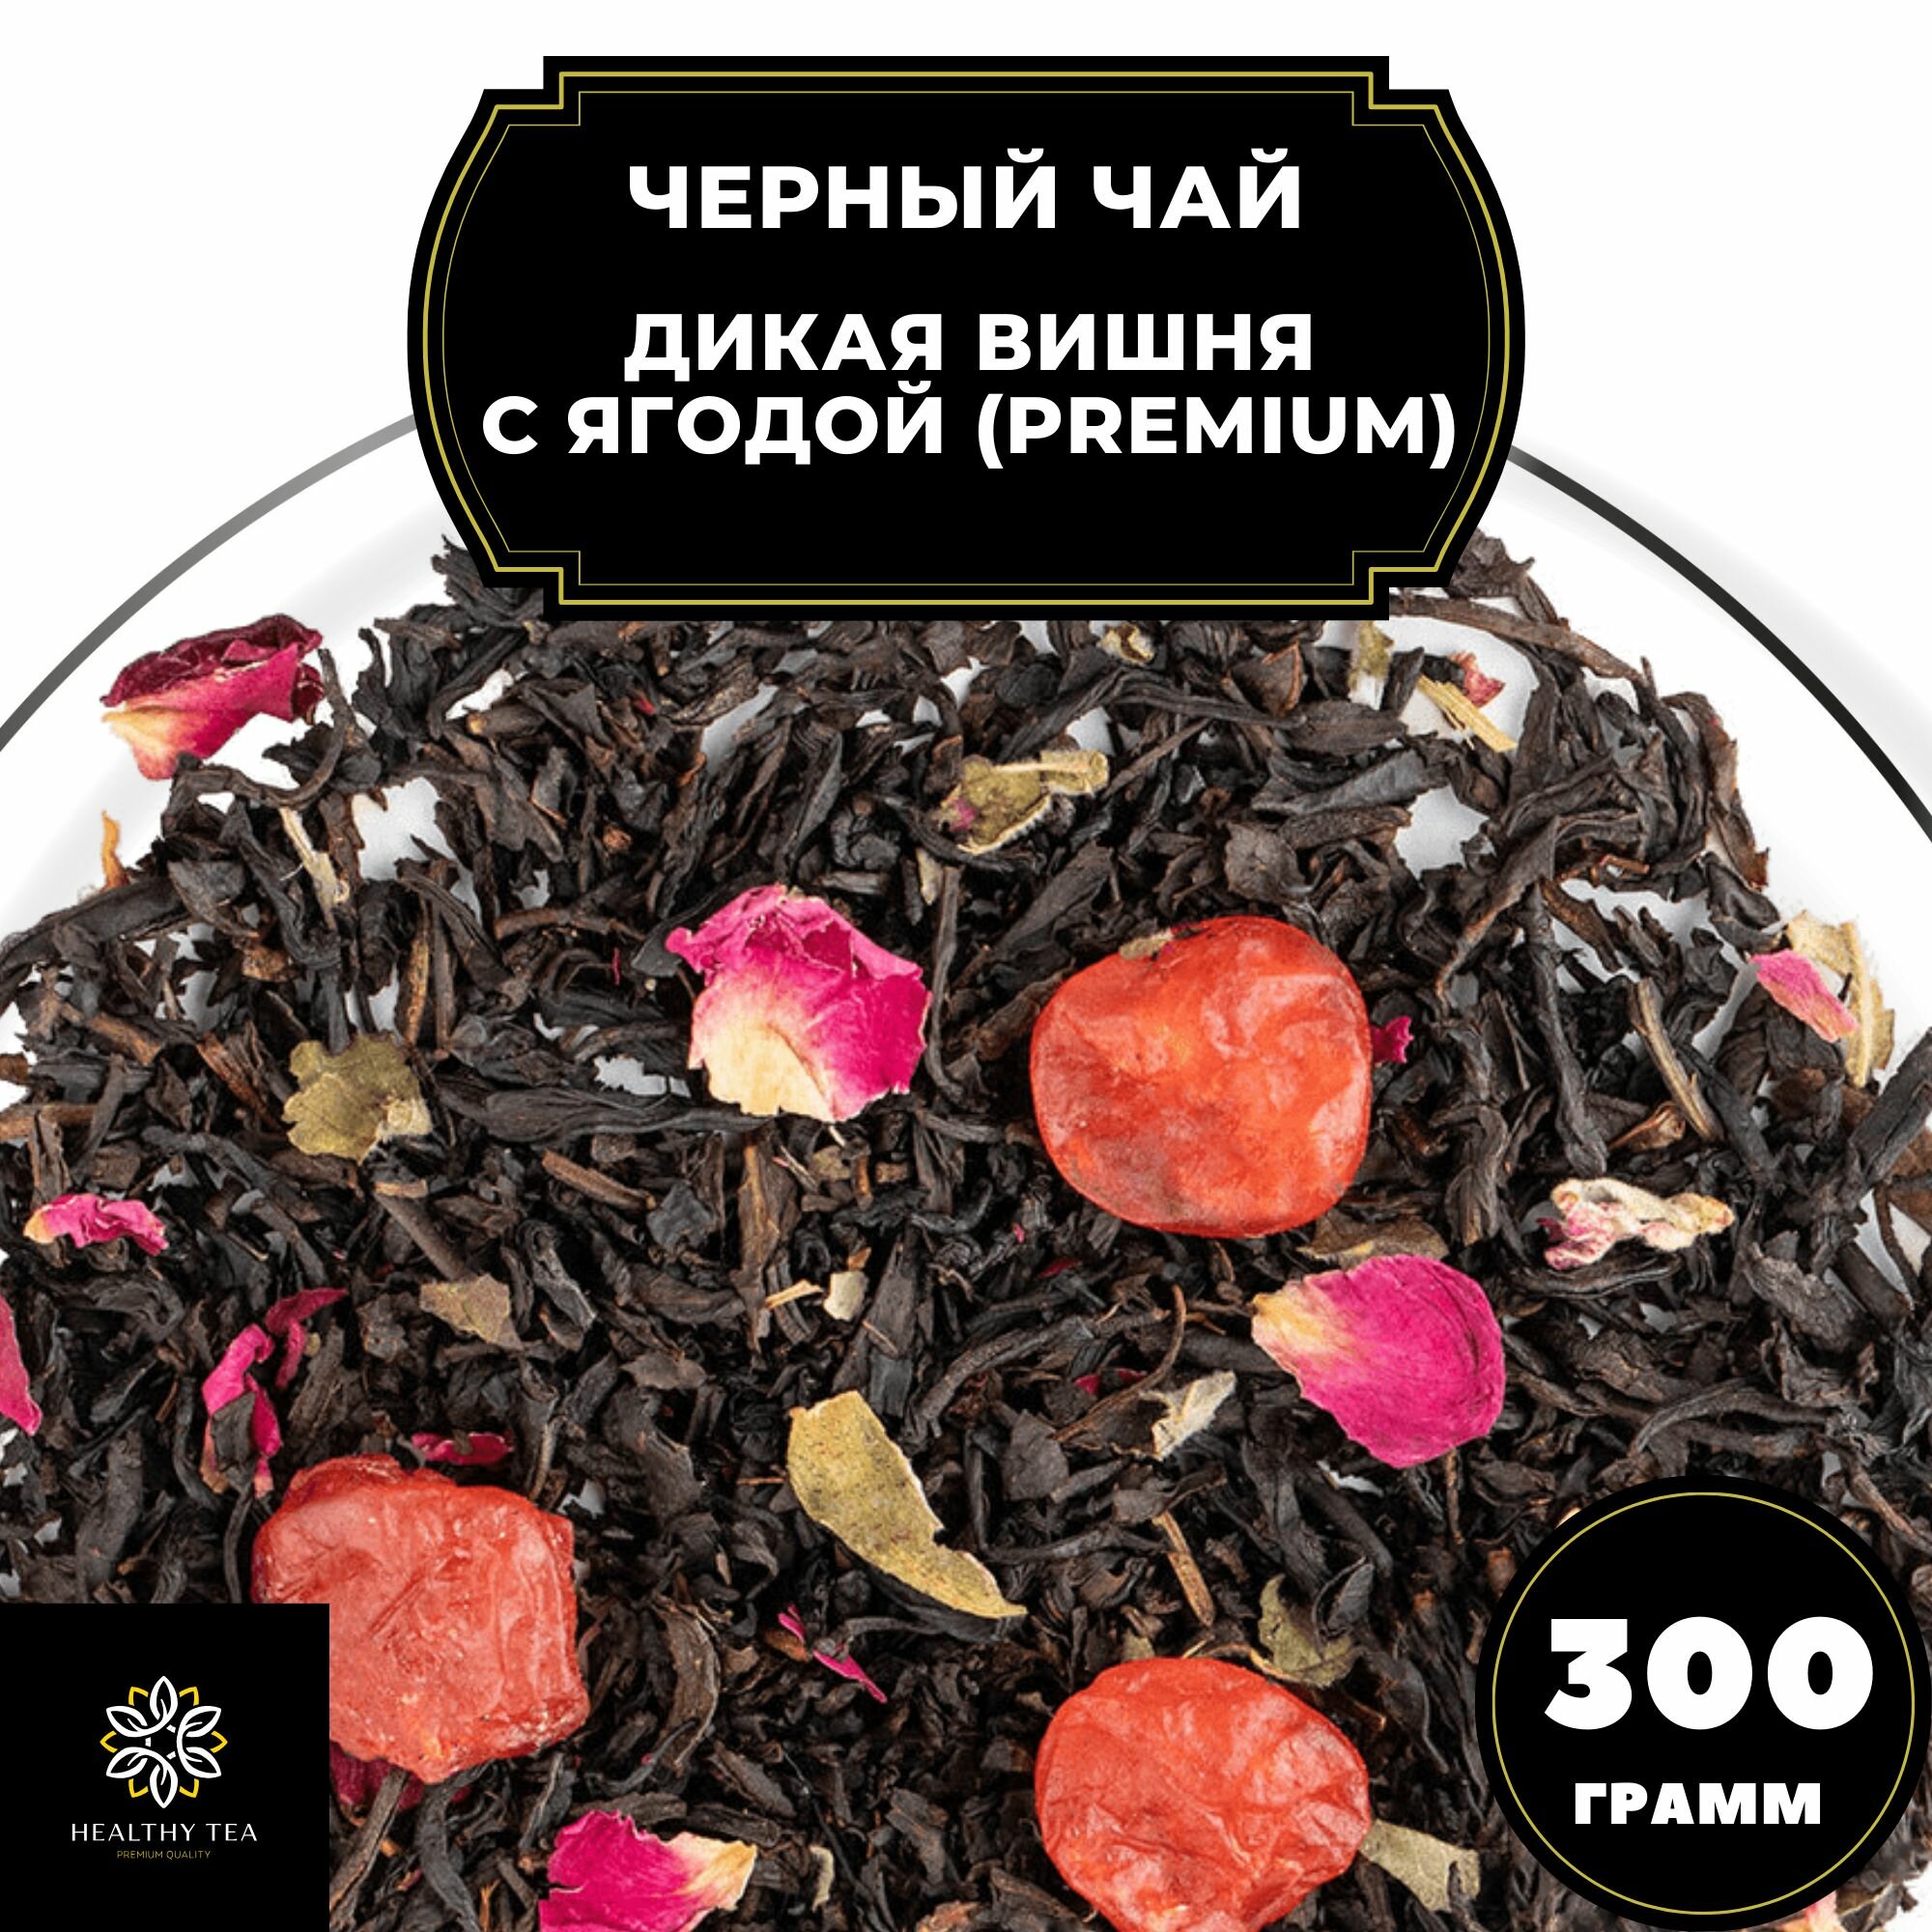 Китайский Черный чай с вишней и розой "Дикая вишня с ягодой" (Premium) Полезный чай / HEALTHY TEA, 300 гр